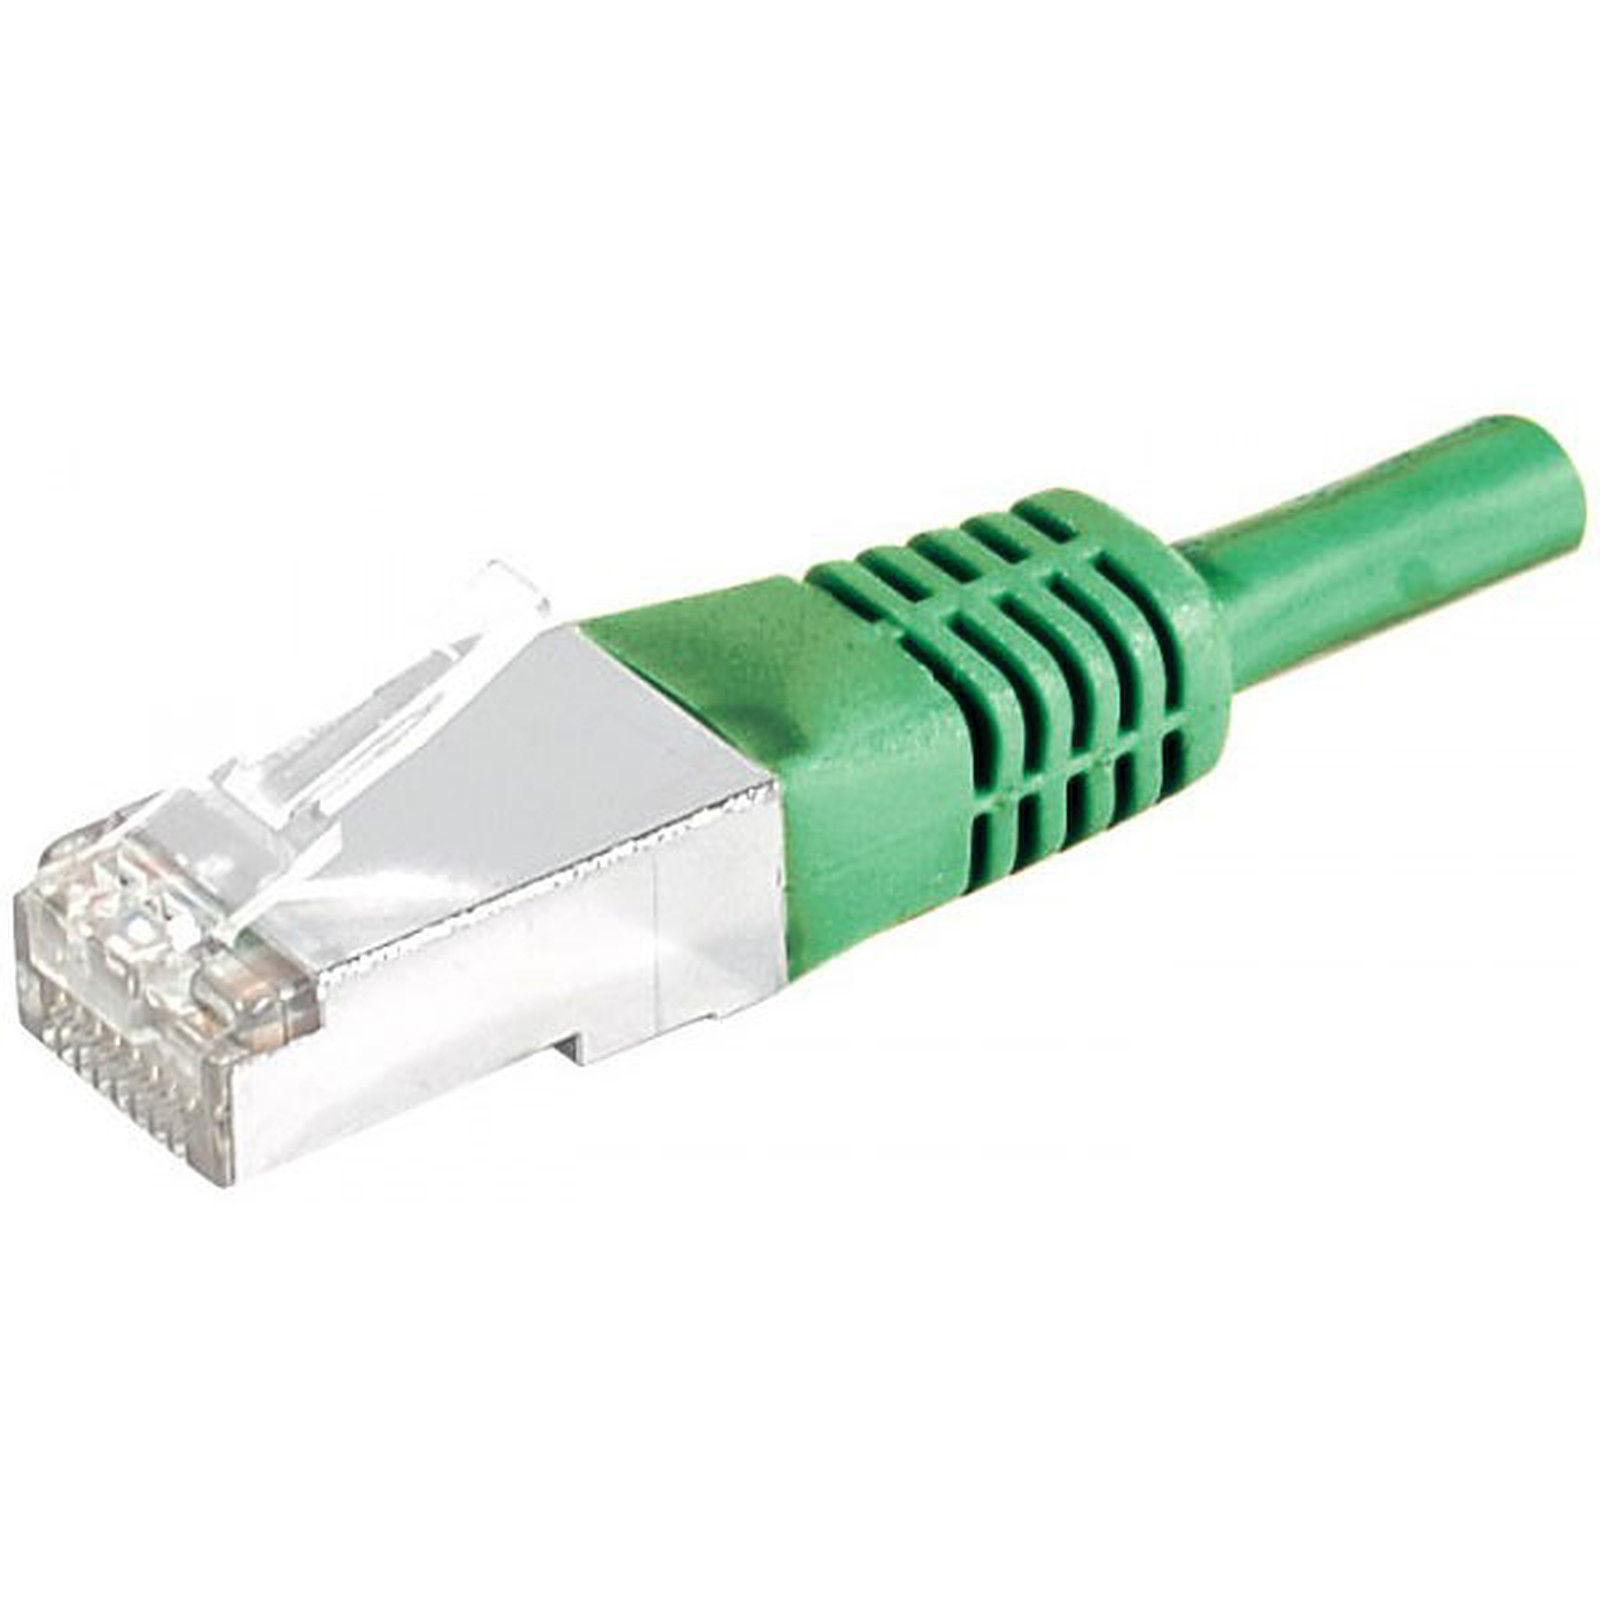 Cable RJ45 categorie 5e F/UTP 0,5 m (Vert) - Cable RJ45 Generique